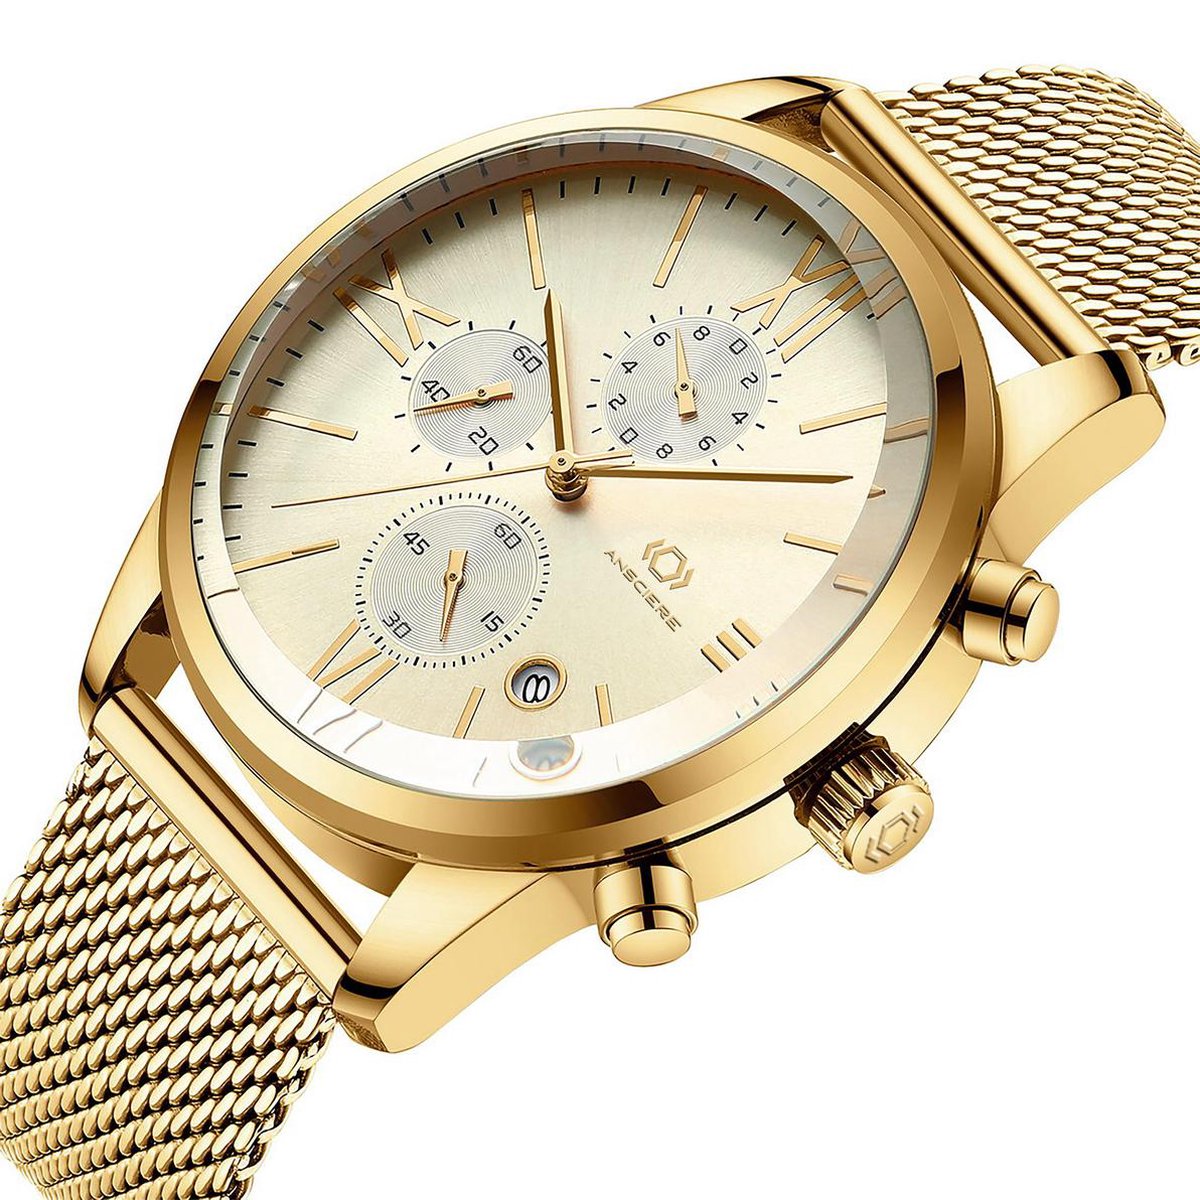 Ansciere Royal - Horloge - Luxe heren horloge Exclusive Series